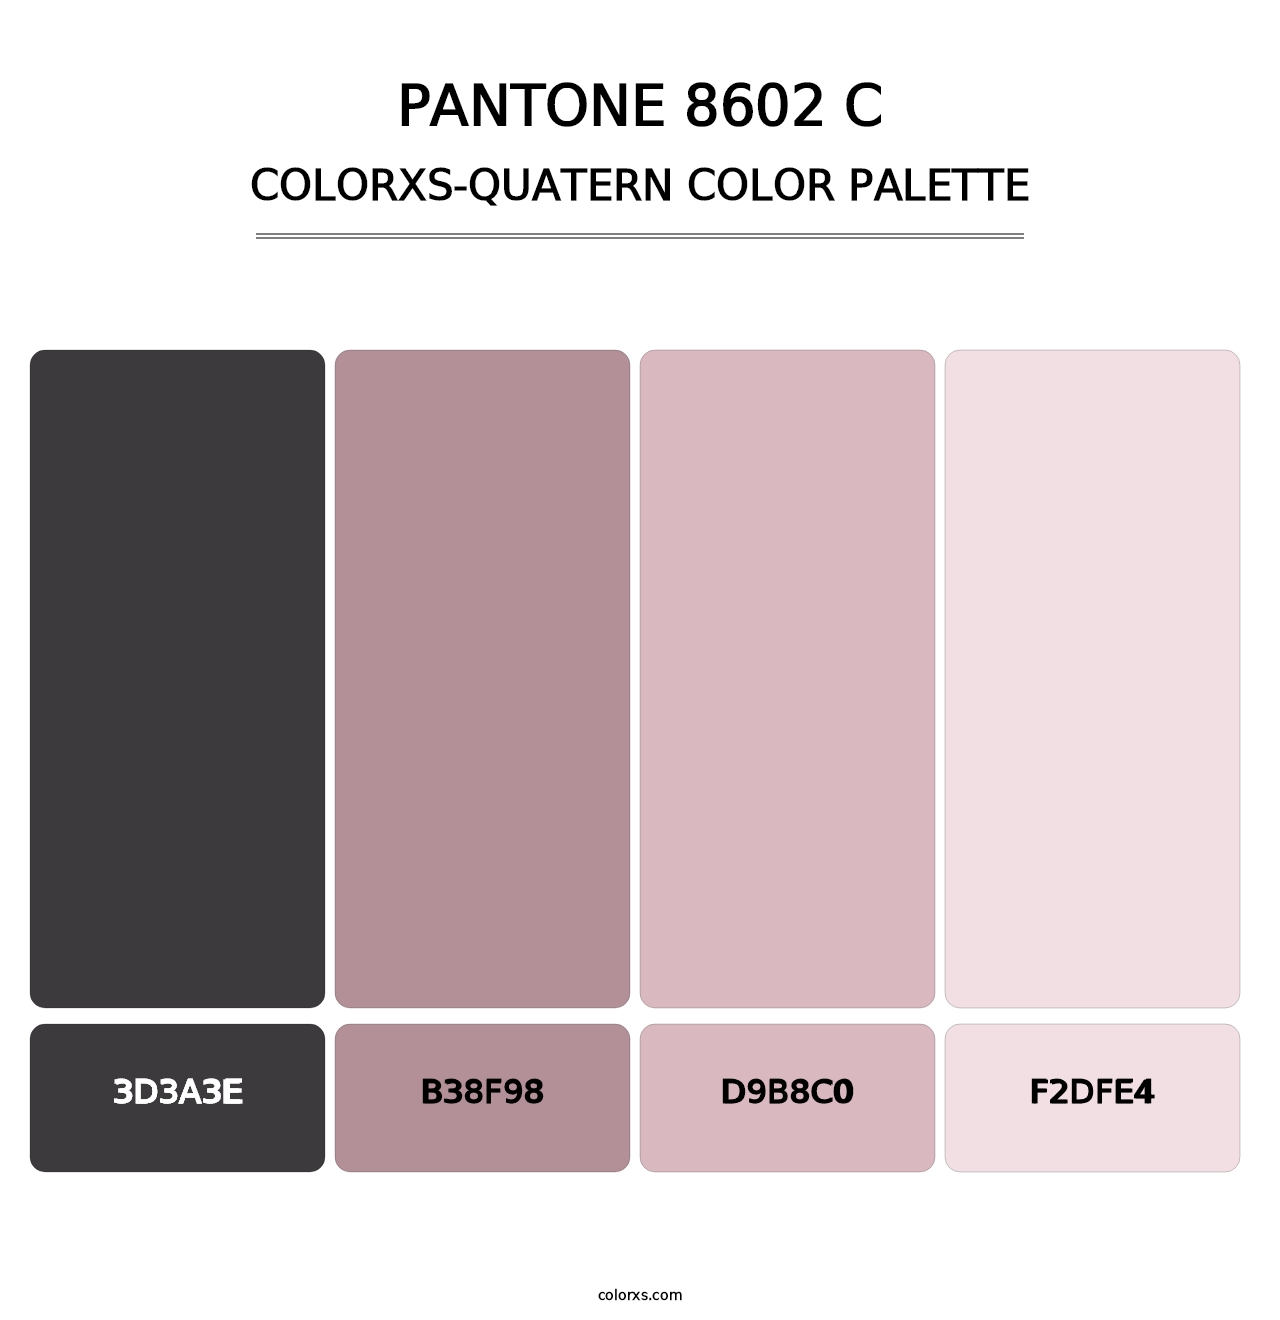 PANTONE 8602 C - Colorxs Quatern Palette